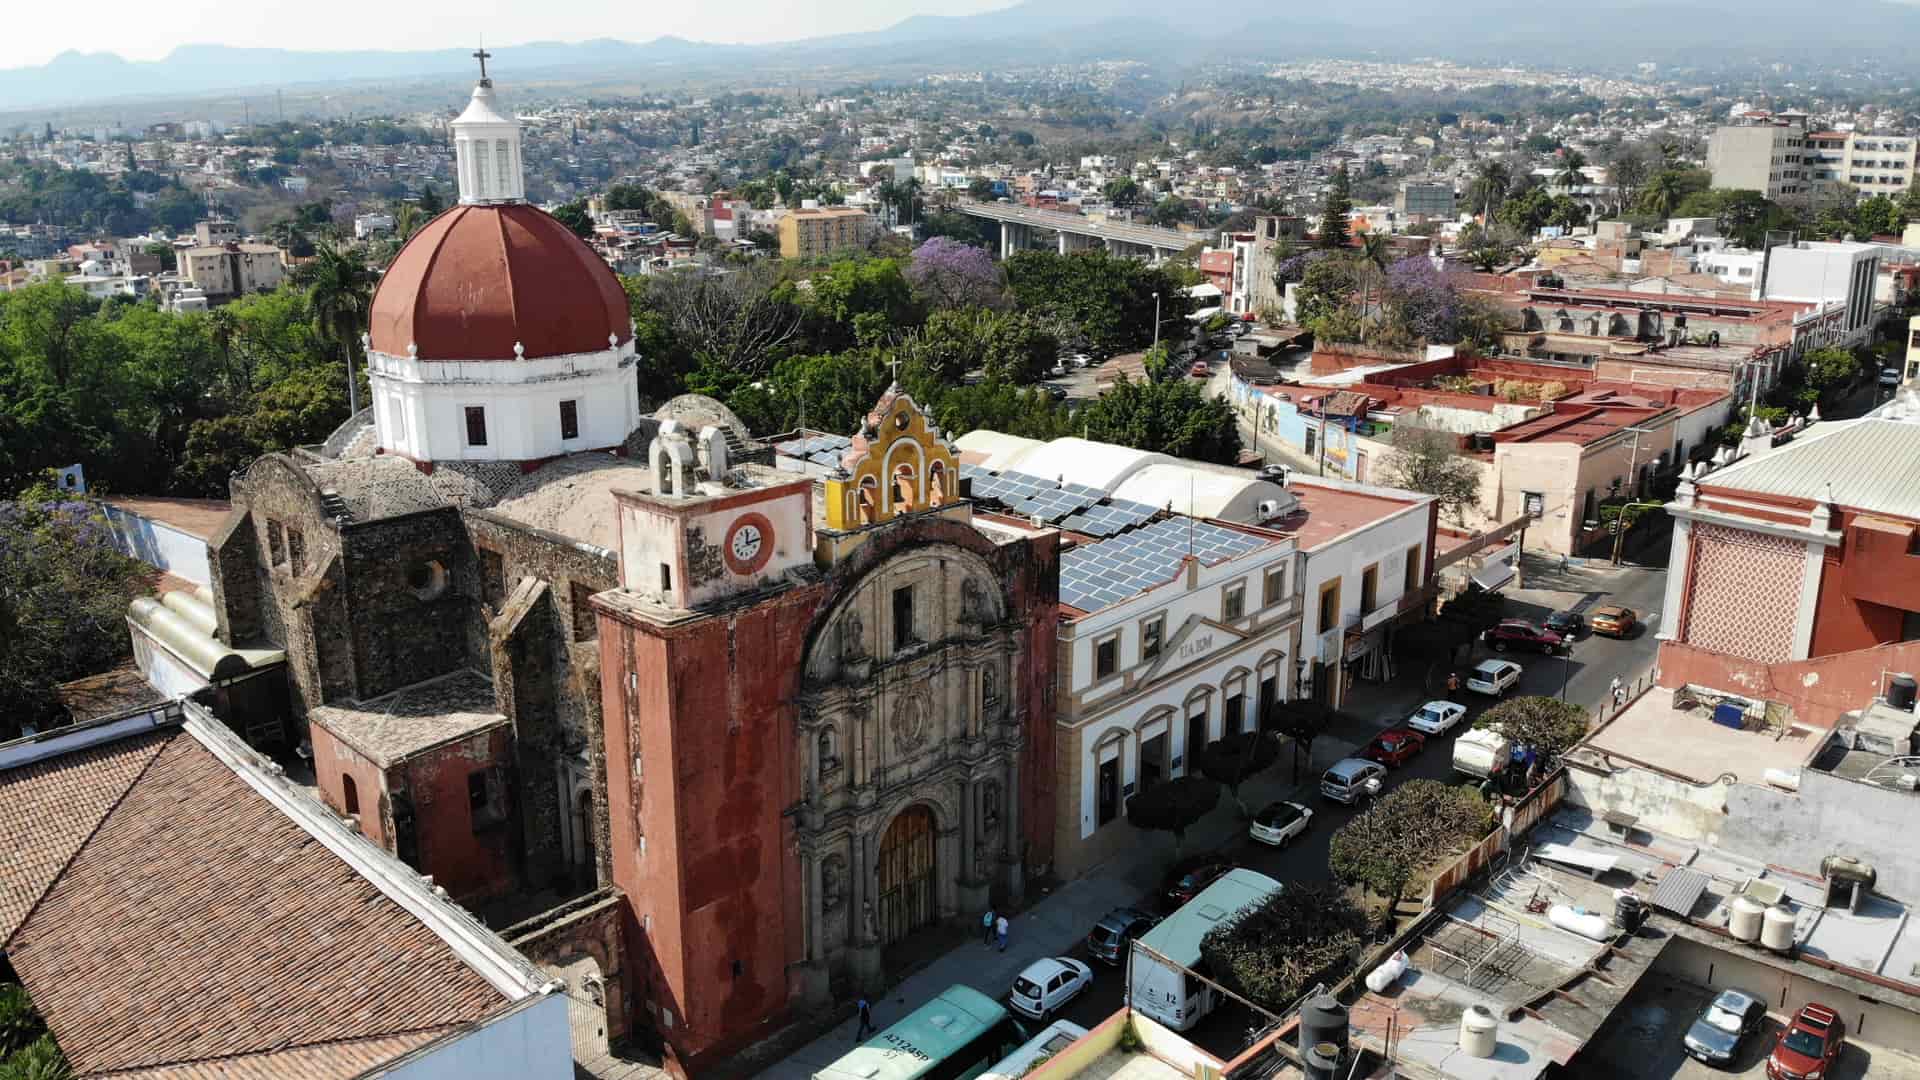 vista aerea de unos templos en la ciudad de cuernavaca donde hay sucursales de dish